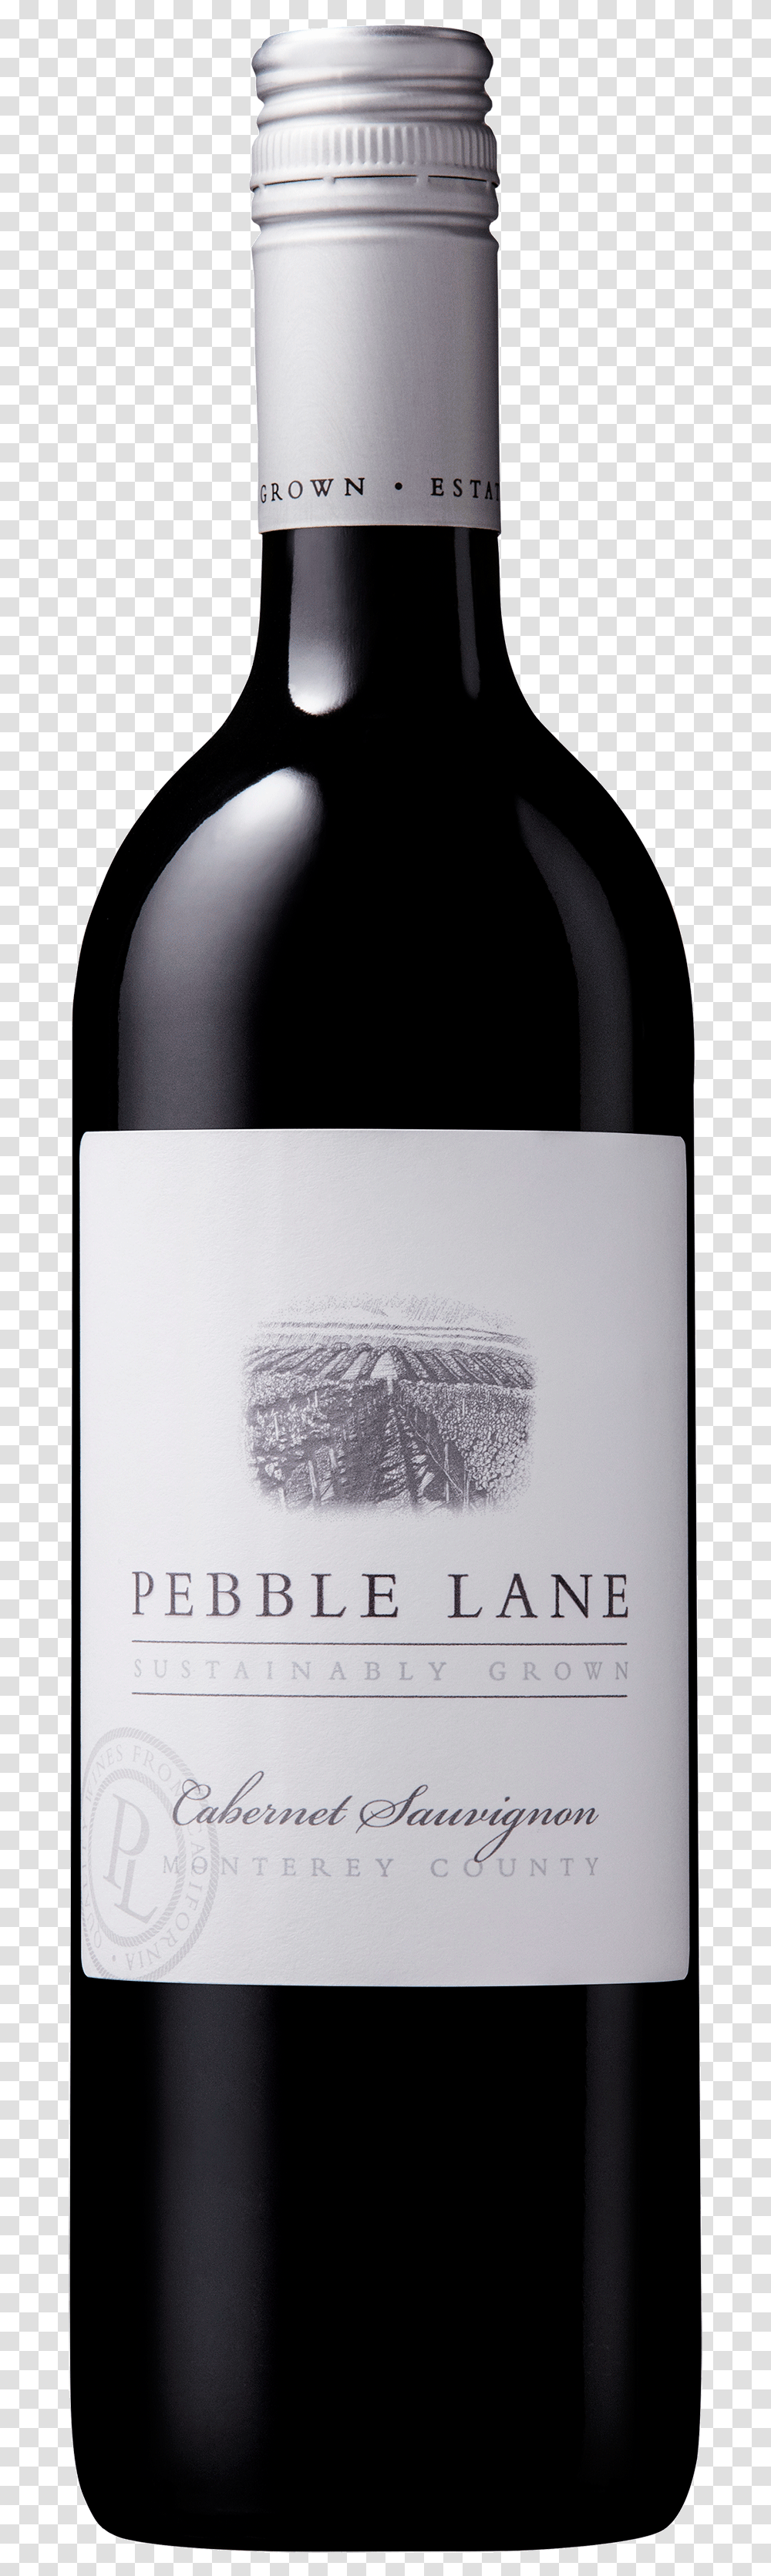 Pebble Lane Red Wine, Alcohol, Beverage, Drink, Bottle Transparent Png